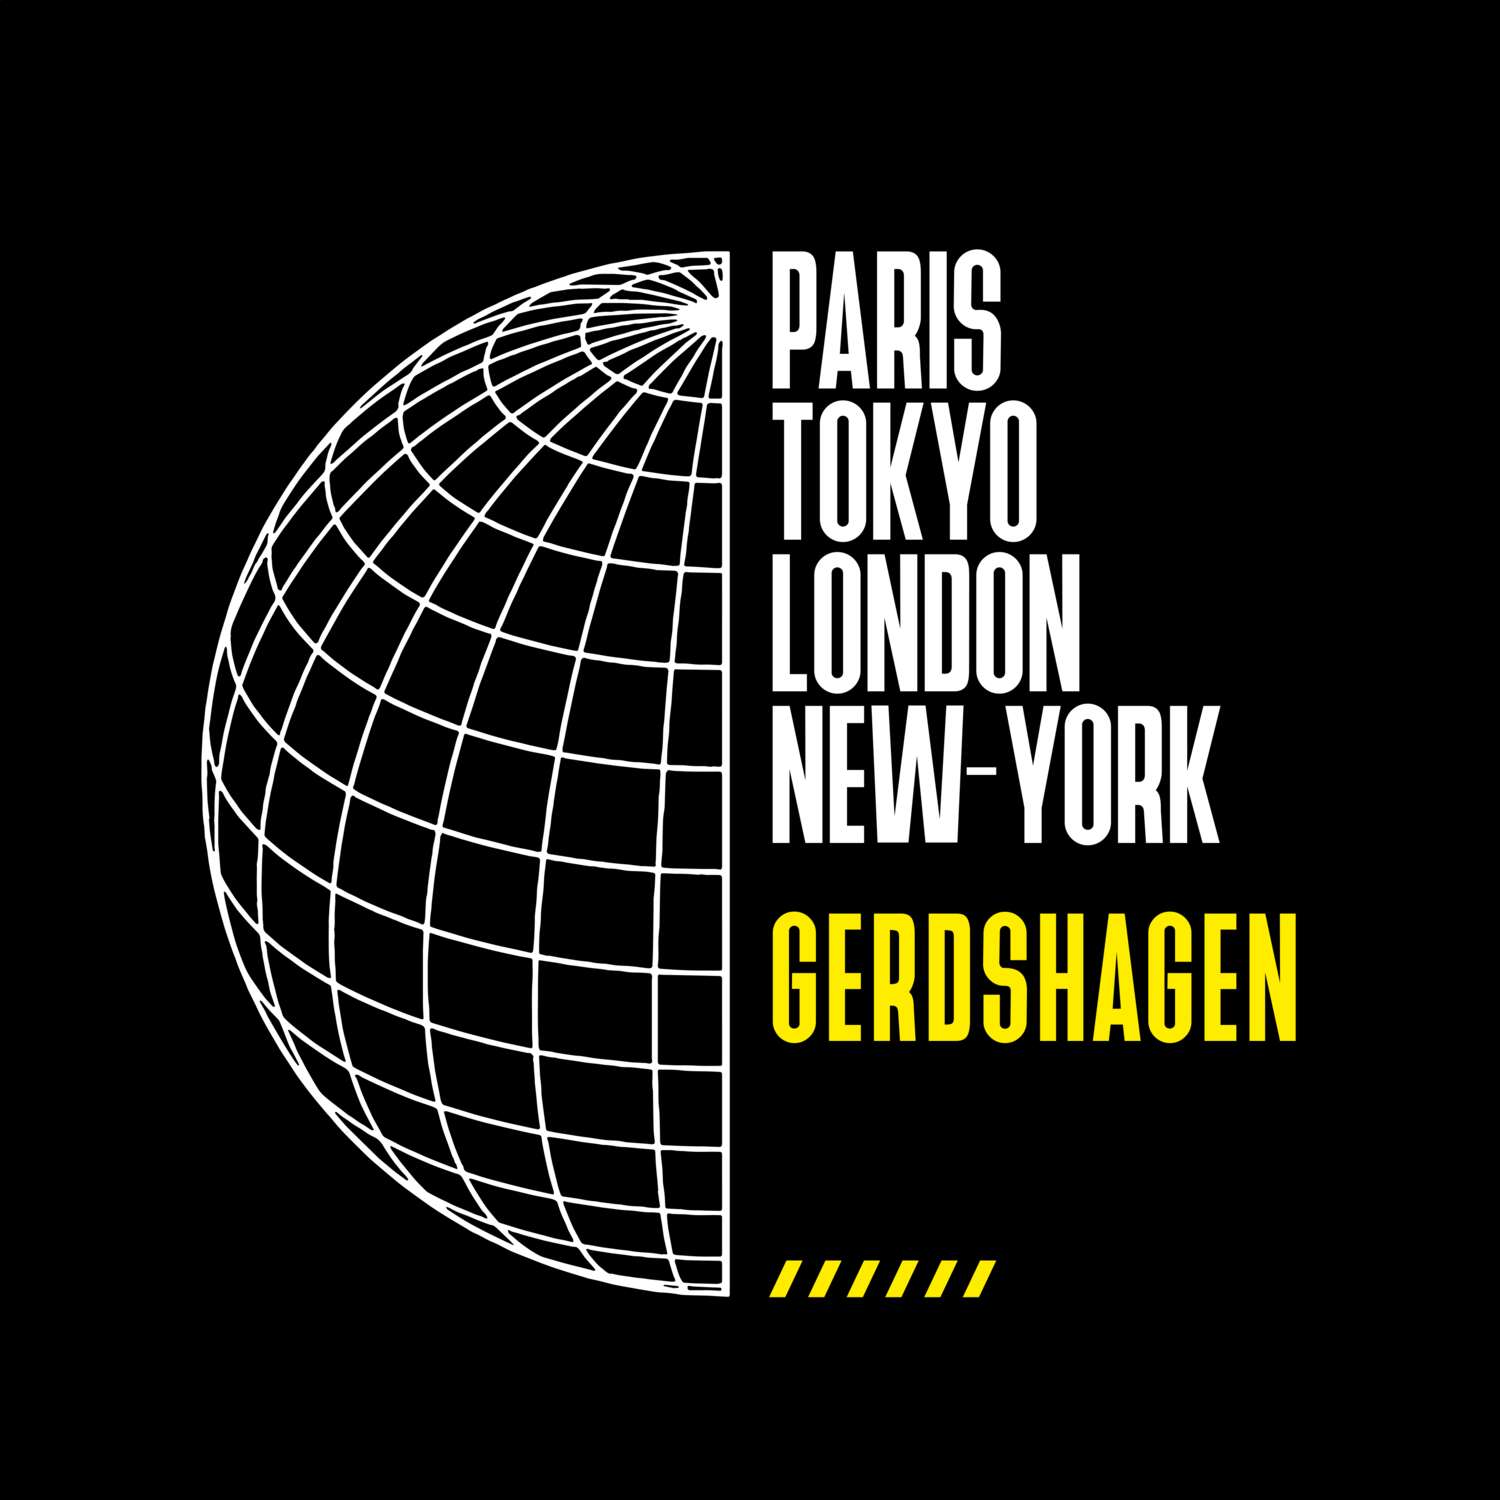 Gerdshagen T-Shirt »Paris Tokyo London«